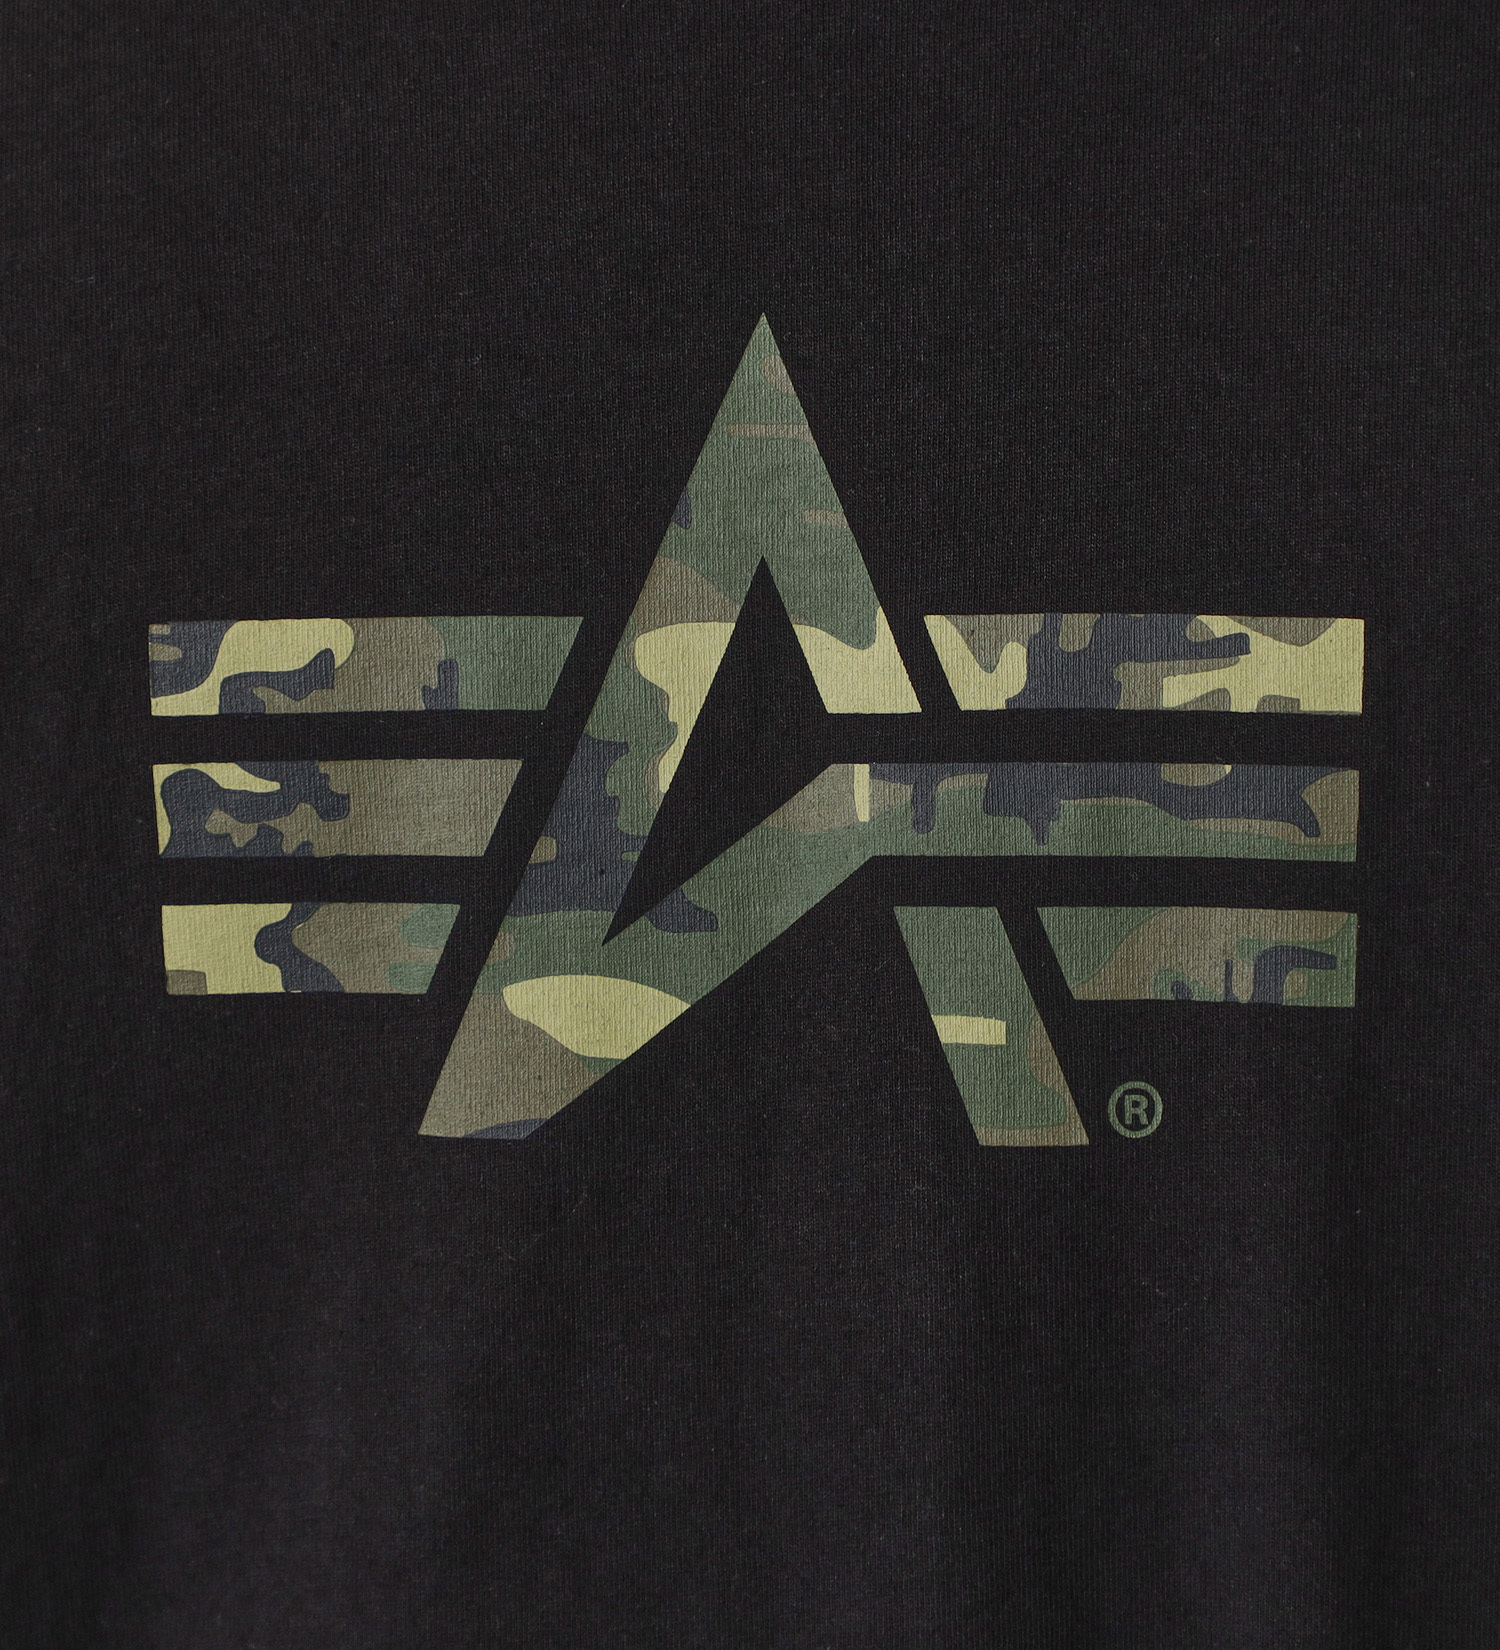 ALPHA(アルファ)の【GW SALE】Aマークプリント 長袖Tシャツ(ウッドランドカモ柄)|トップス/Tシャツ/カットソー/メンズ|ブラック